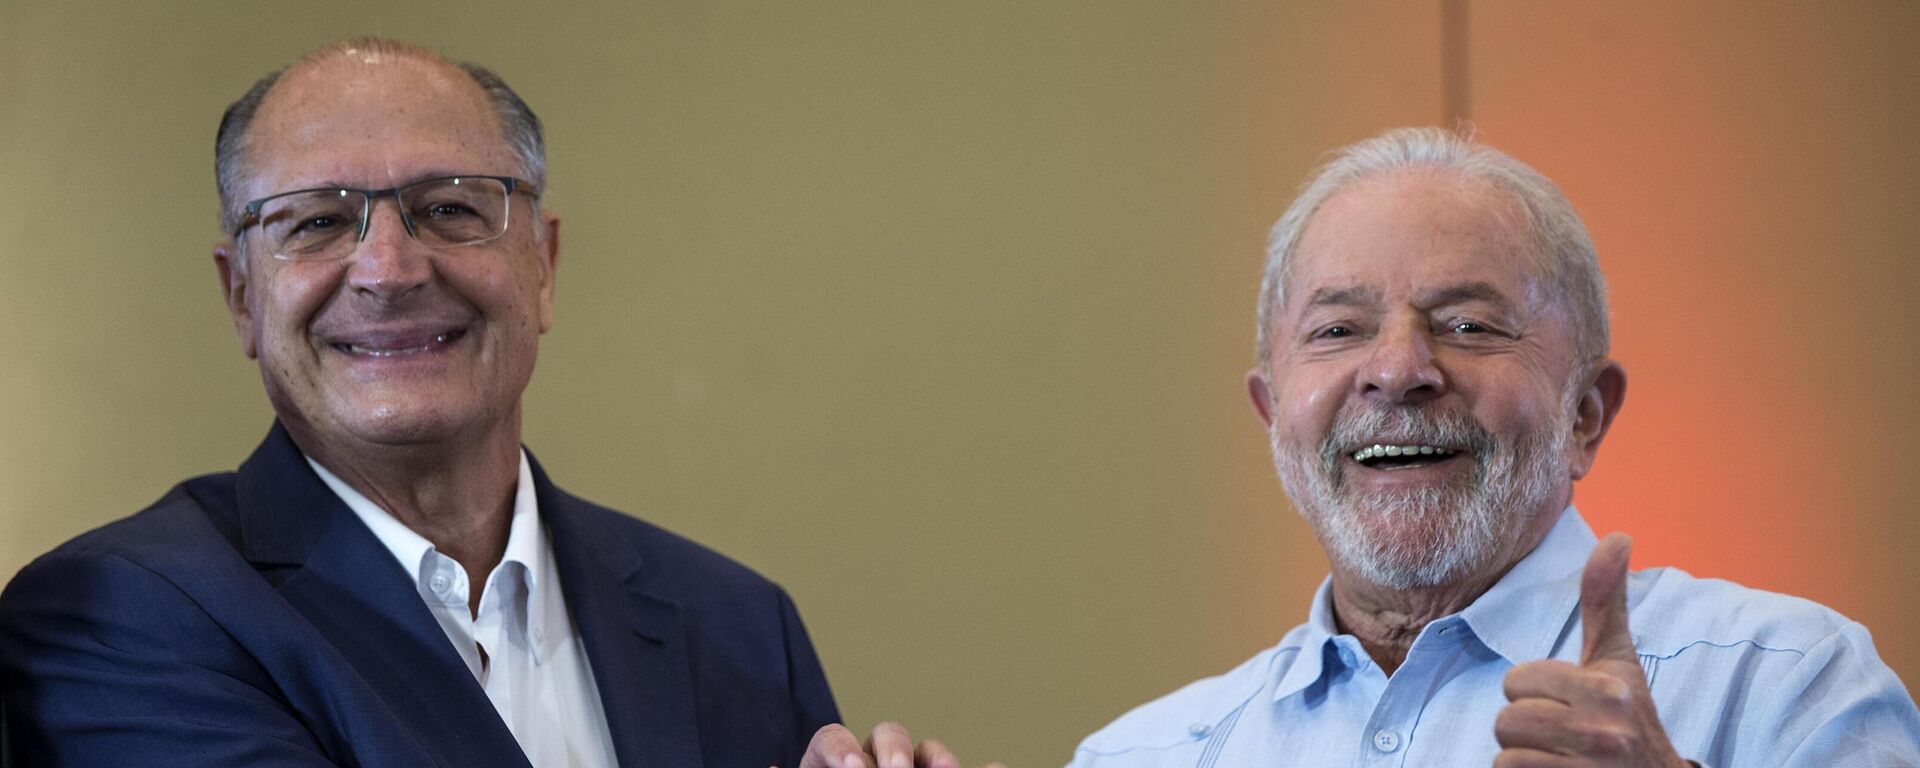 Geraldo Alckmin (PSB) é oficializado como vice-presidente na chapa de Lula (PT) para as eleições de 2022 - Sputnik Brasil, 1920, 08.04.2022